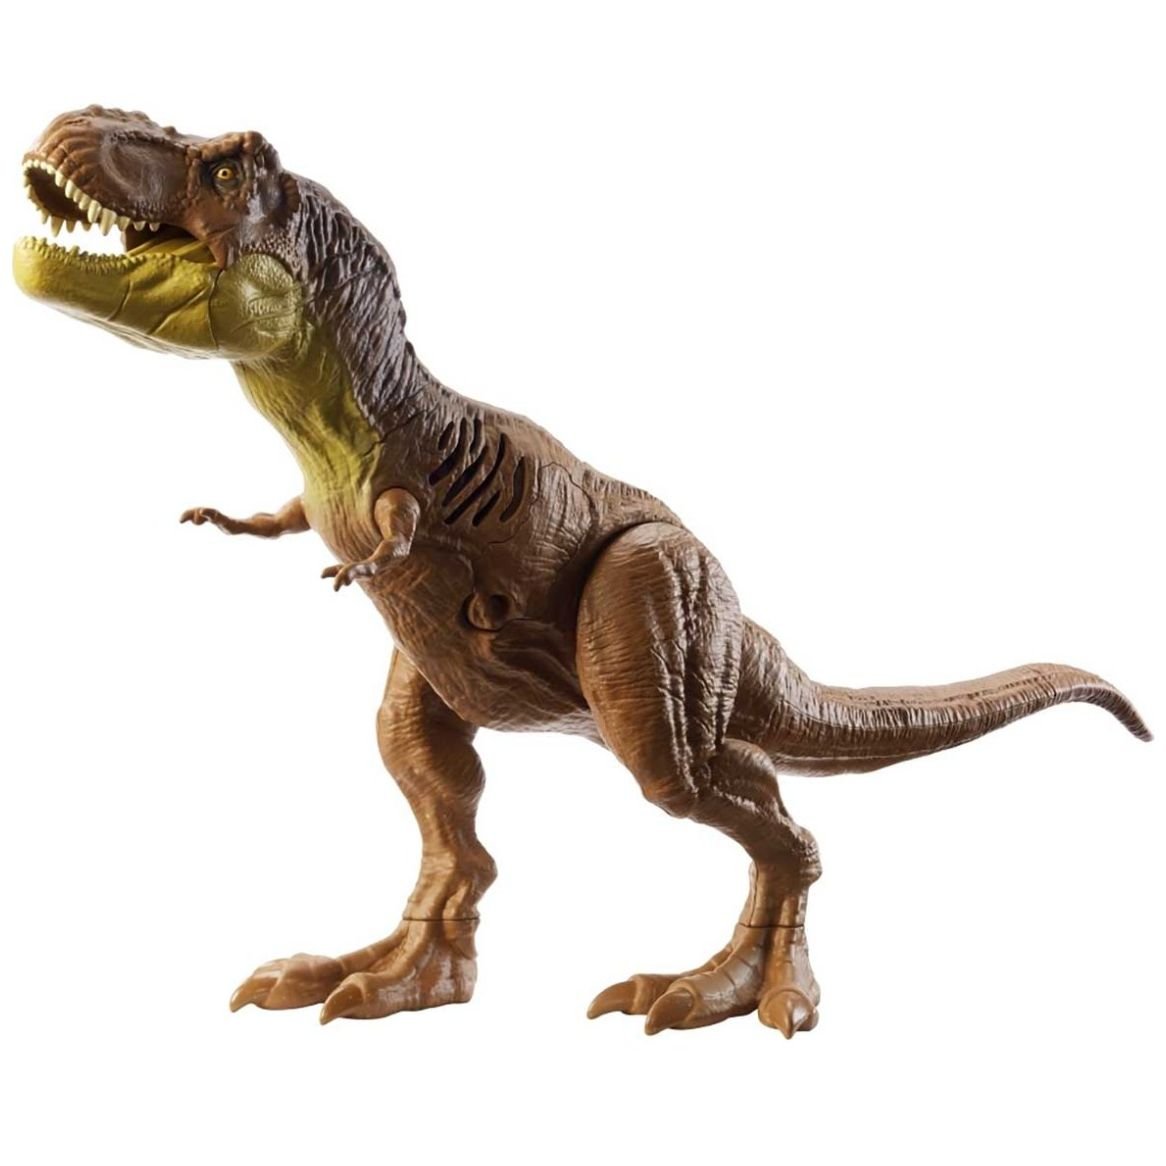 Jurassic World T-Rex, Dinosaurio de 12 con Sonidos